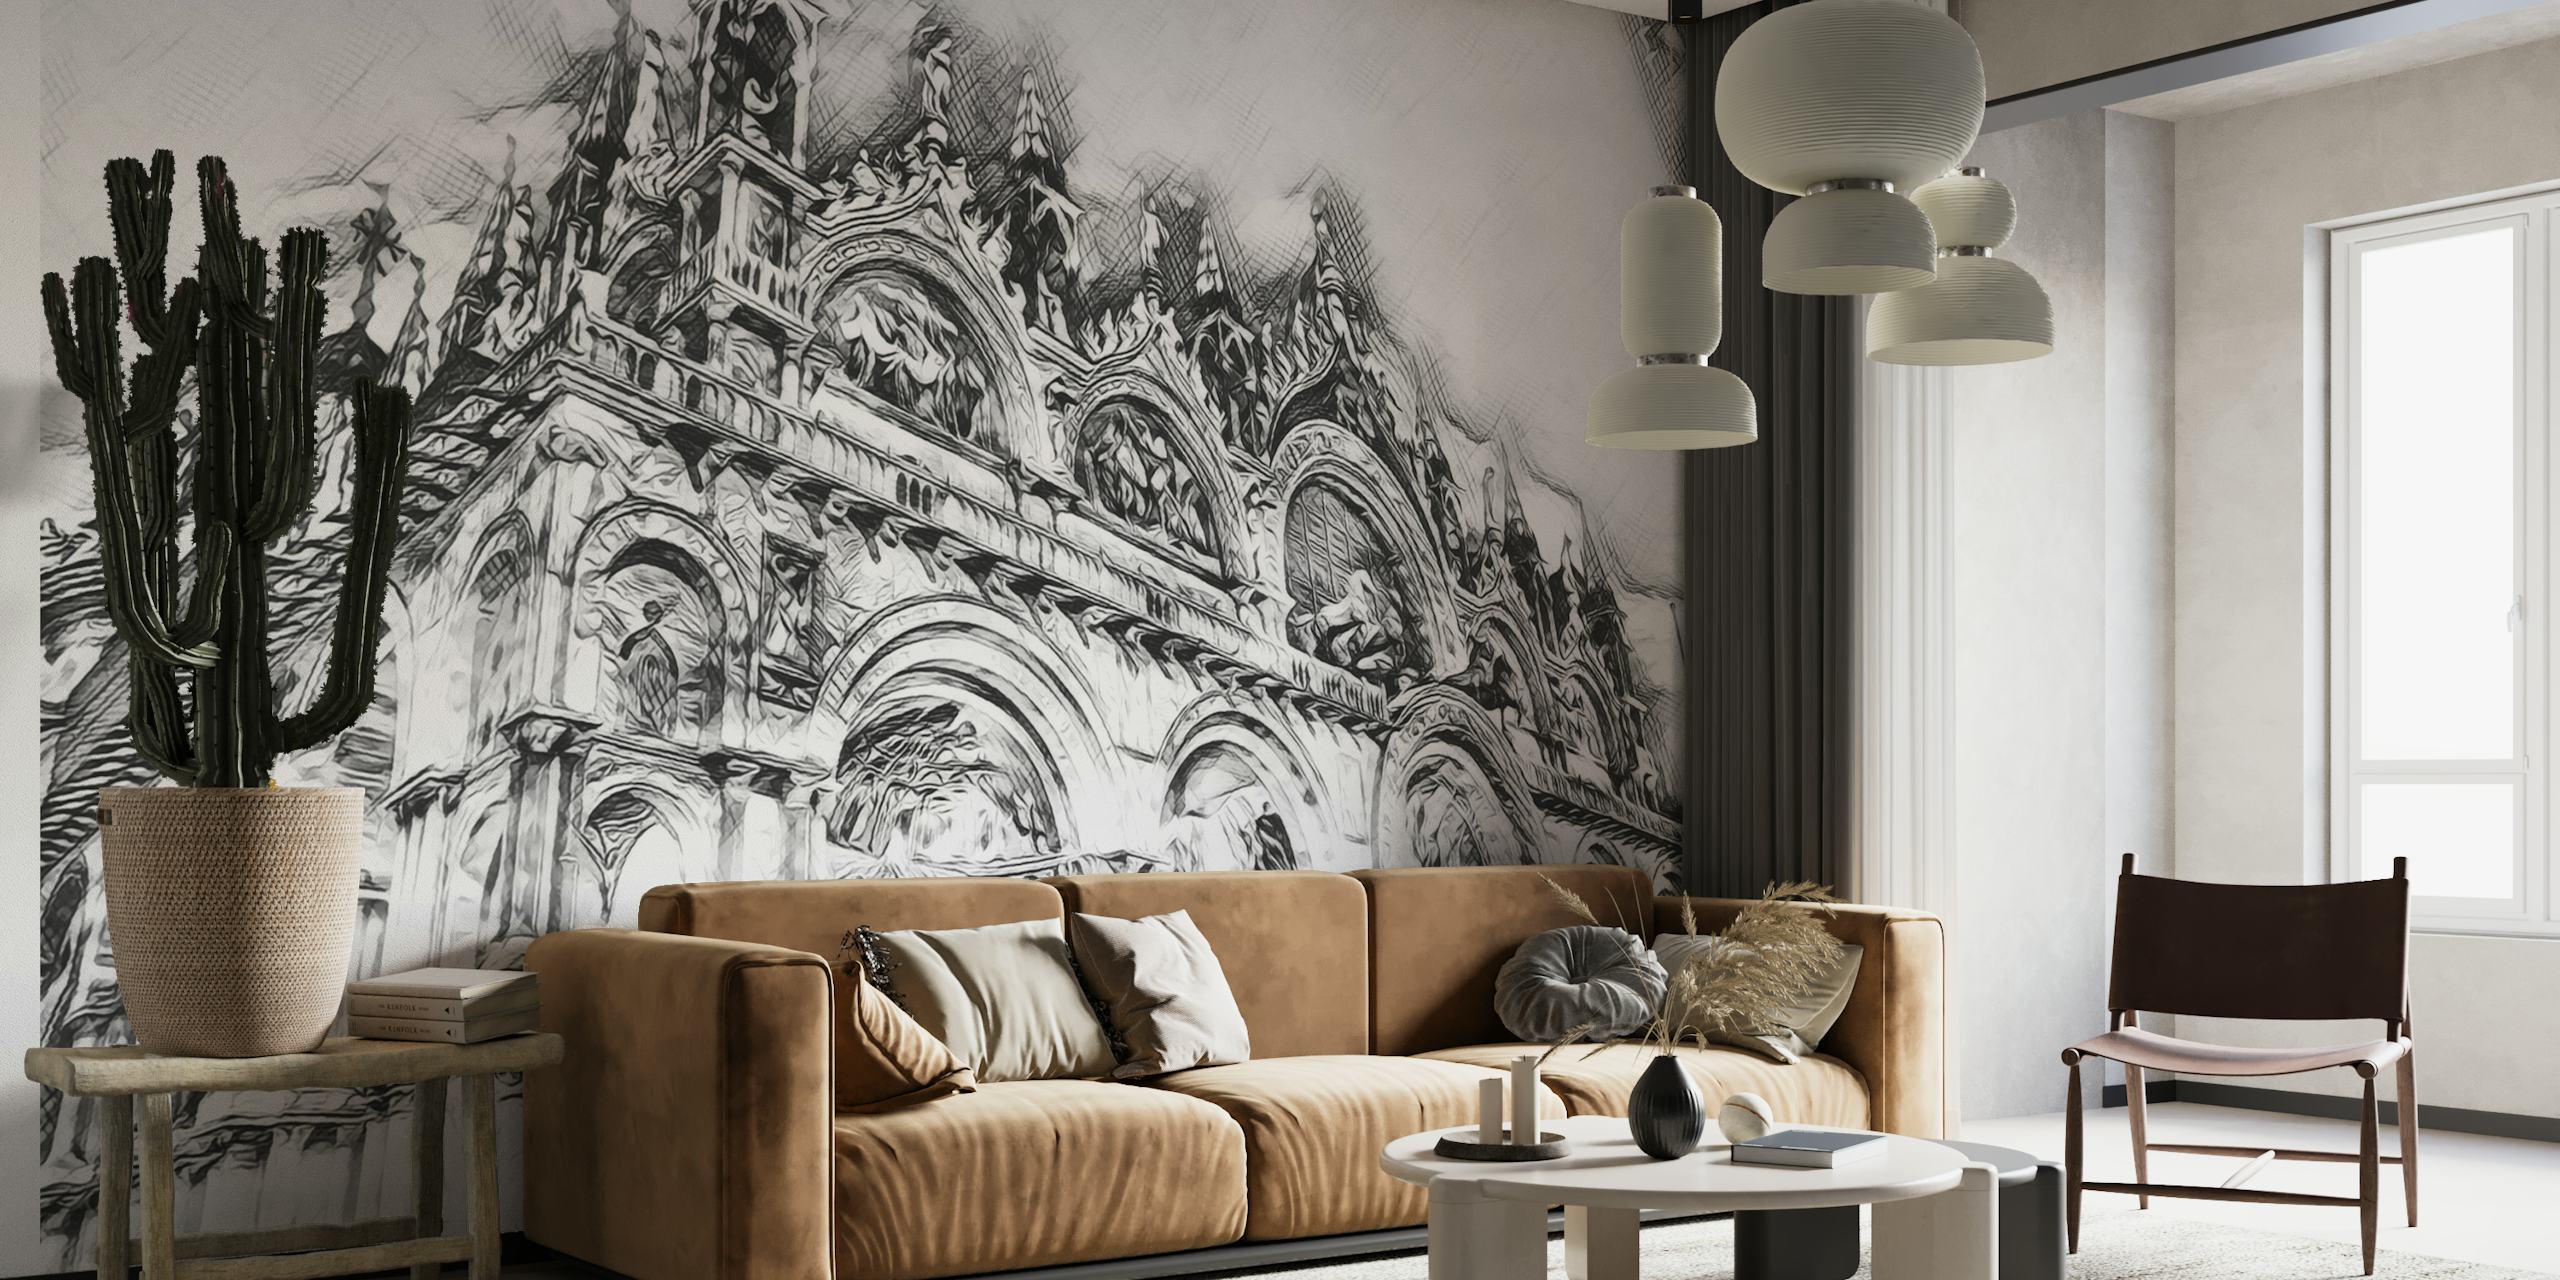 Sort og hvidt vægmaleri af Venedigs katedral med indviklede detaljer